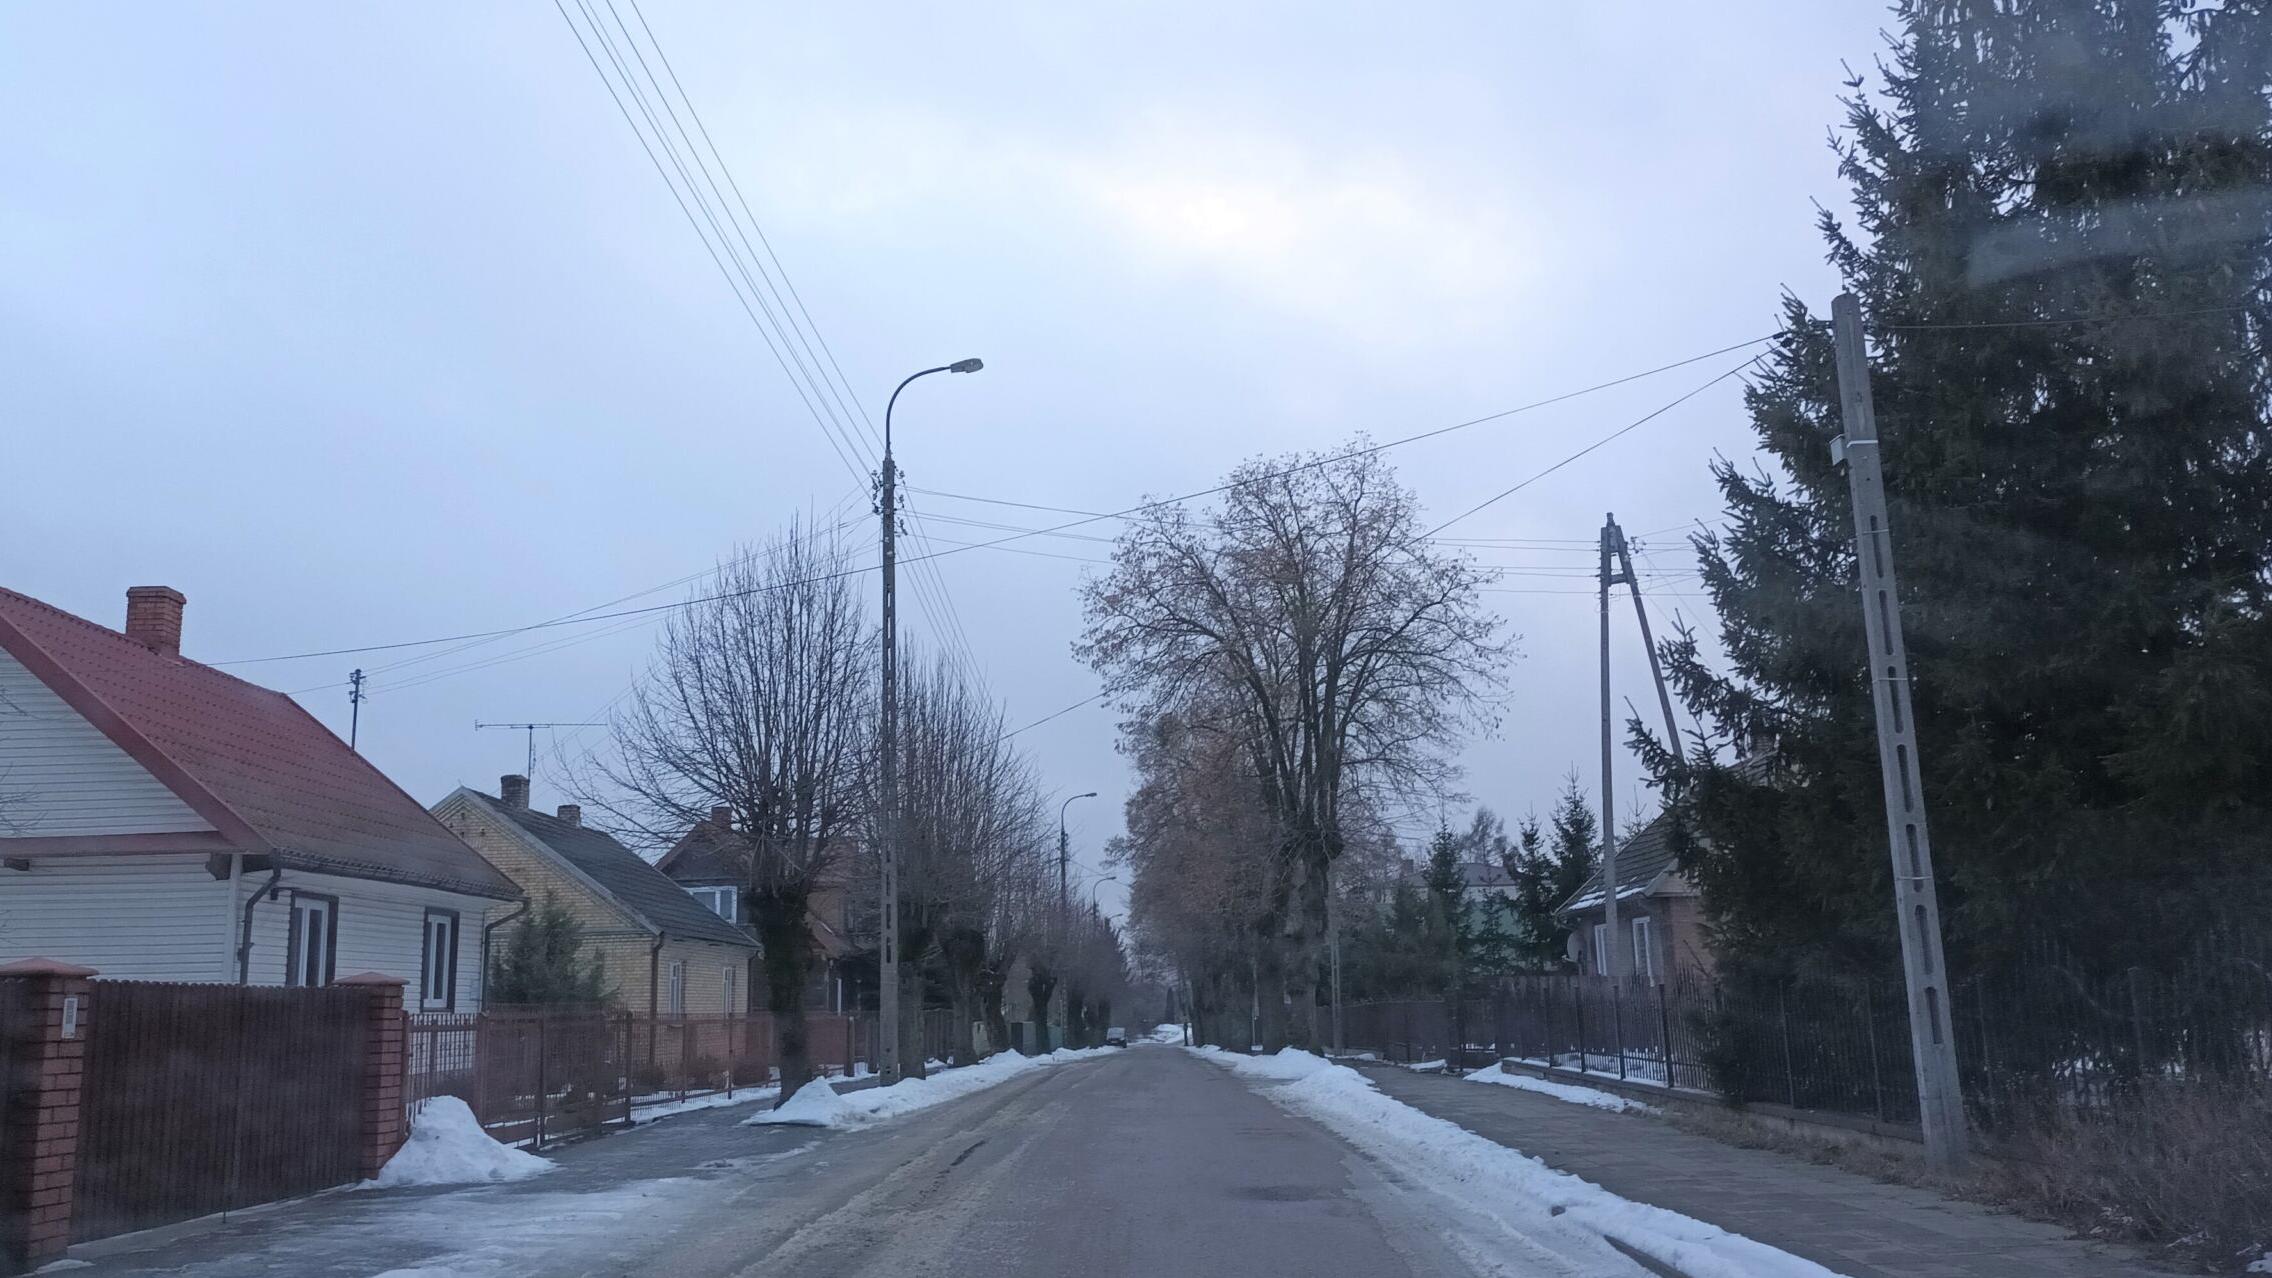 Zdjęcie uliczki w małej miejscowości. Widać niewysokie domy i śnieg